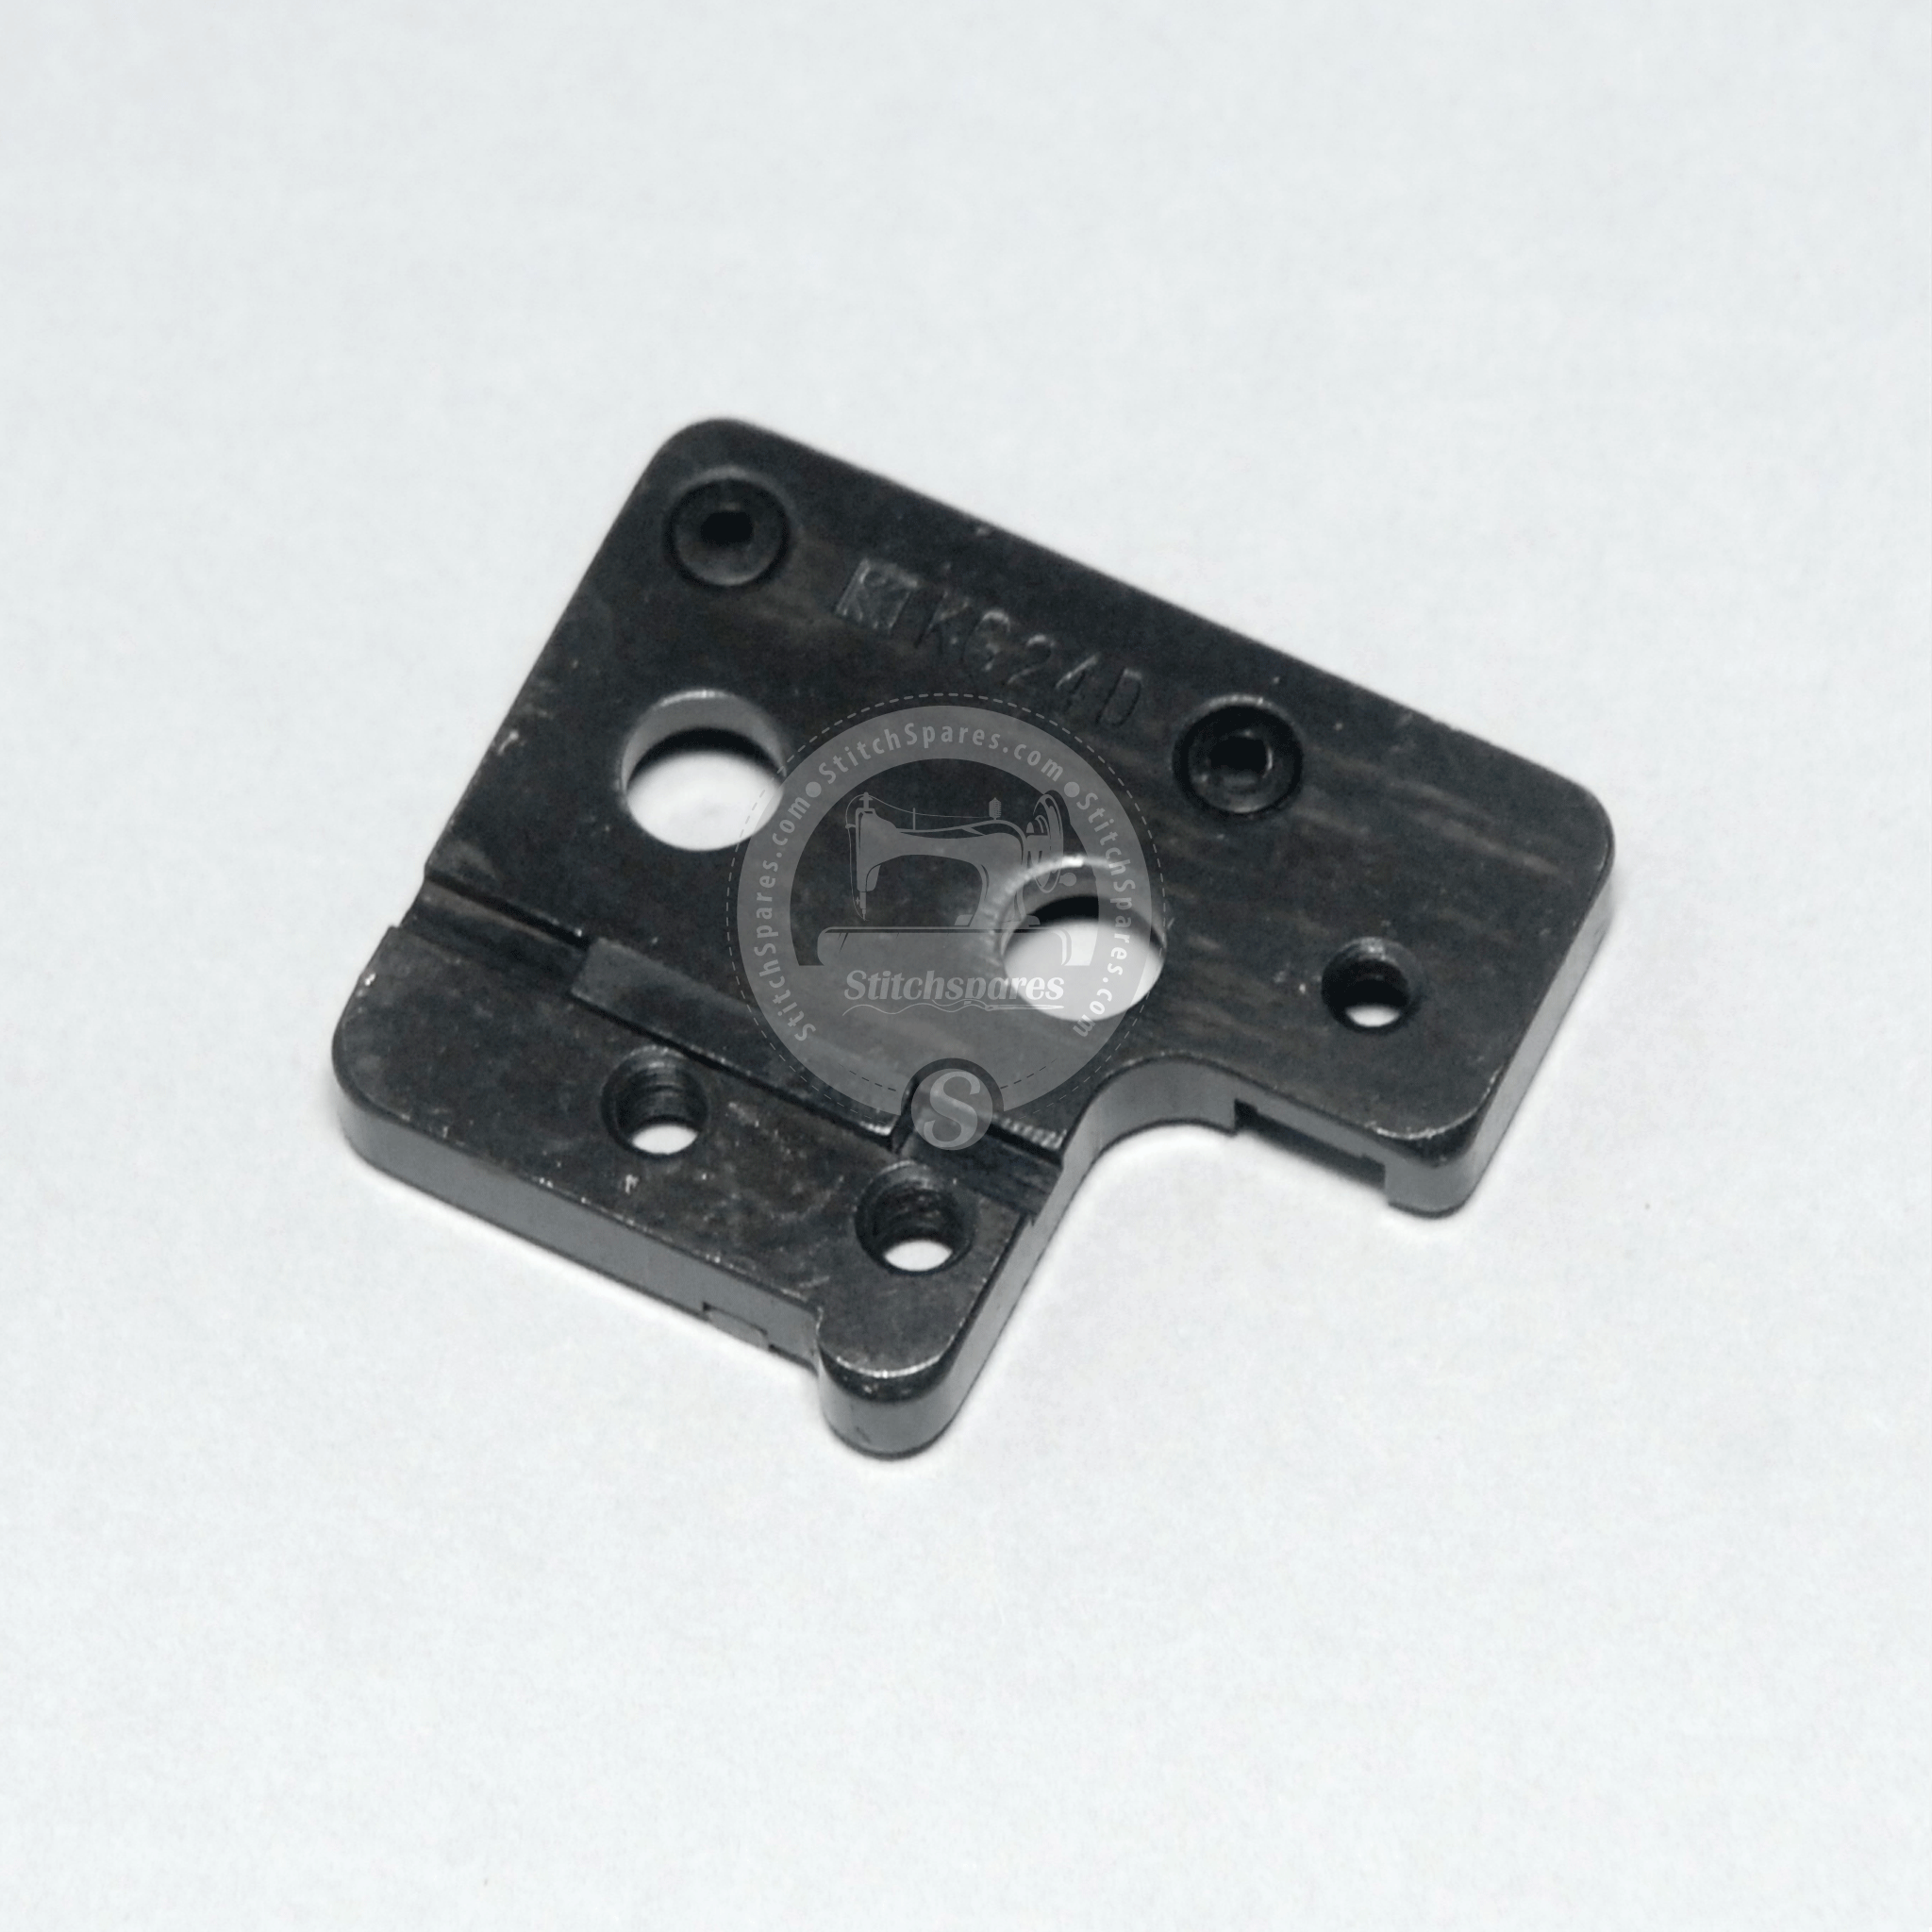 Soporte de placa de aguja KG24D para repuesto de máquina de coser Overlock SIRUBA 747, 757, 767